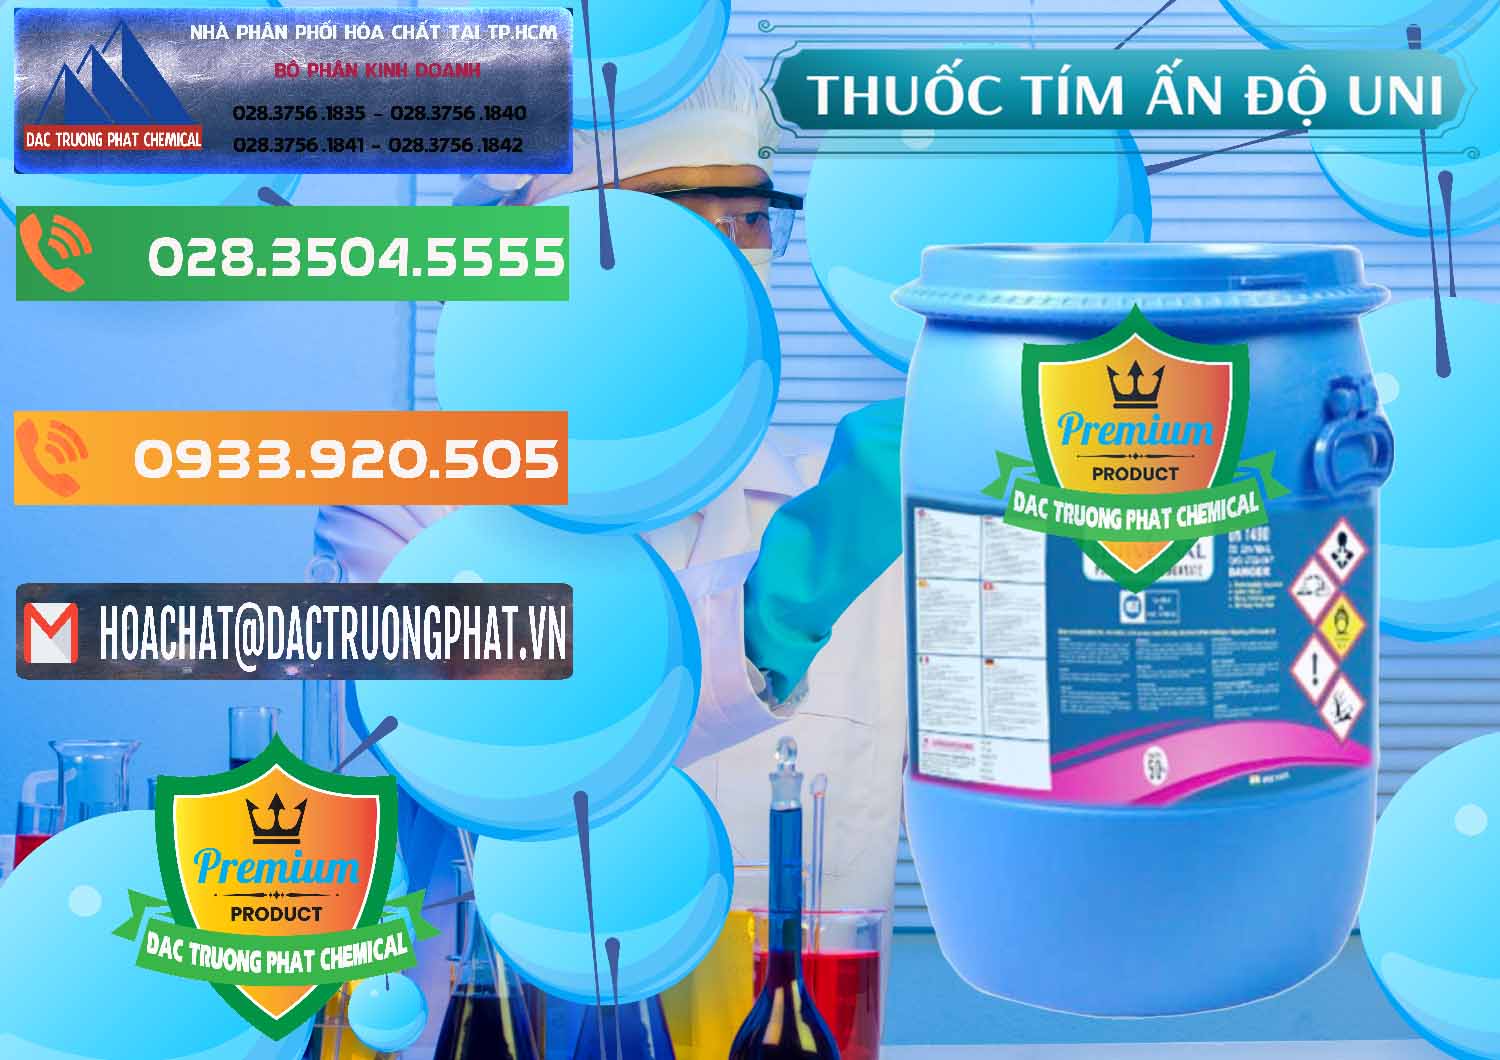 Nhà cung cấp & bán Thuốc Tím - KMNO4 Universal Ấn Độ India - 0419 - Cty phân phối - cung cấp hóa chất tại TP.HCM - hoachatxulynuoc.com.vn